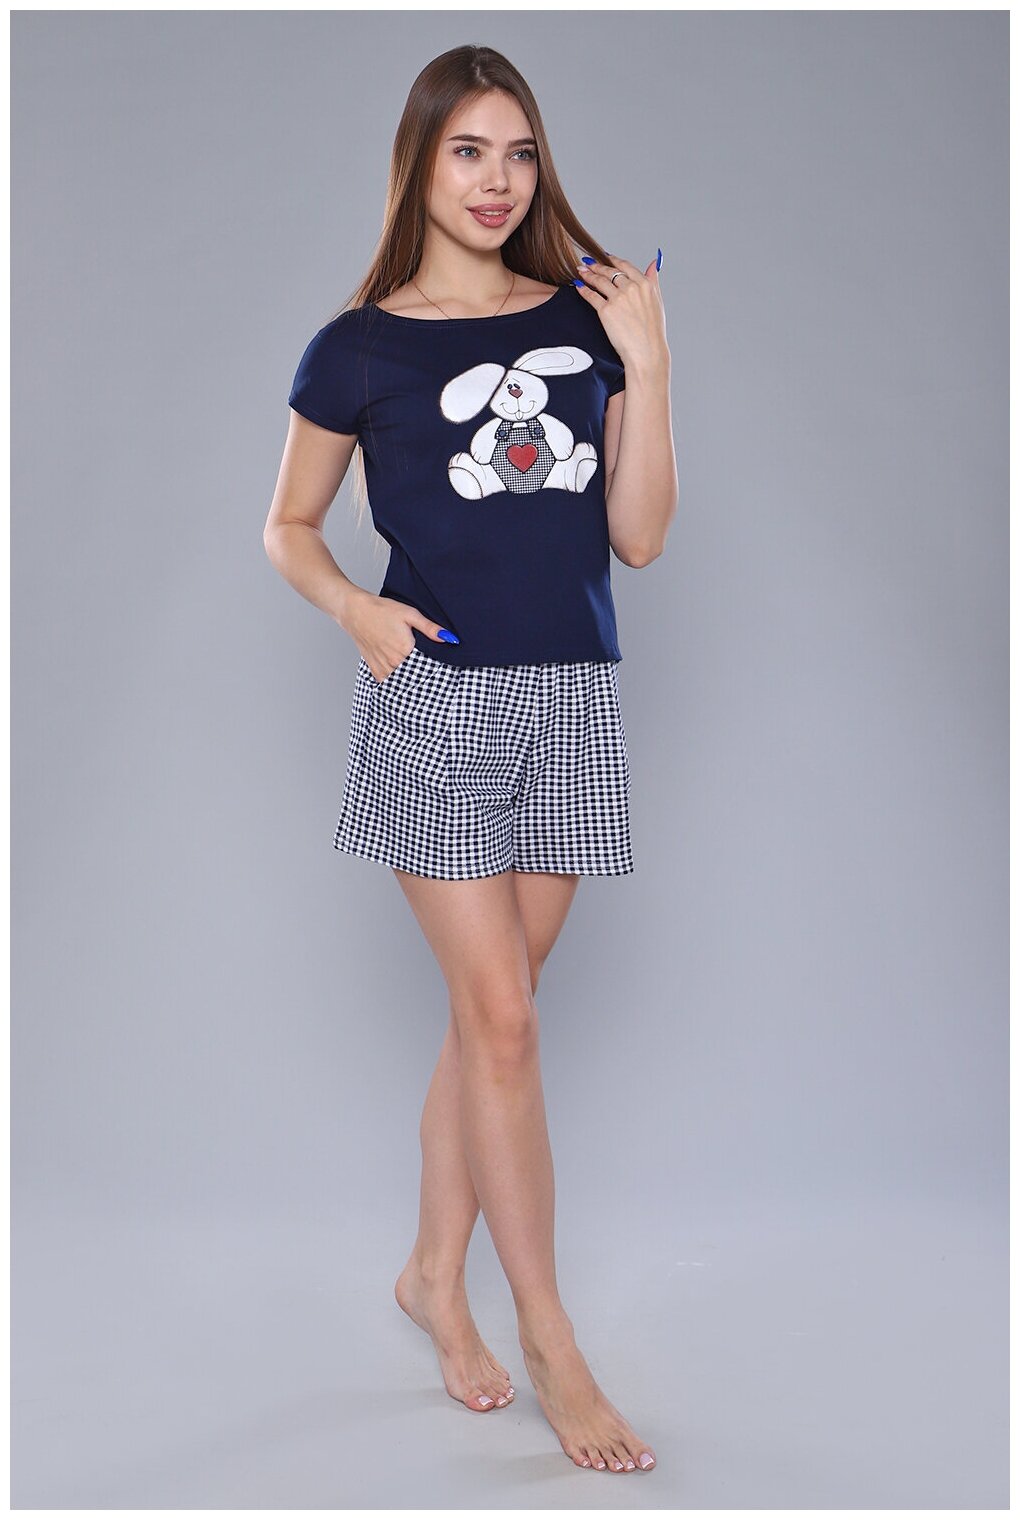 Женский домашний костюм/ пижама (футболка+ шорты) в клетку темно-синего цвета, размер 54 - фотография № 7